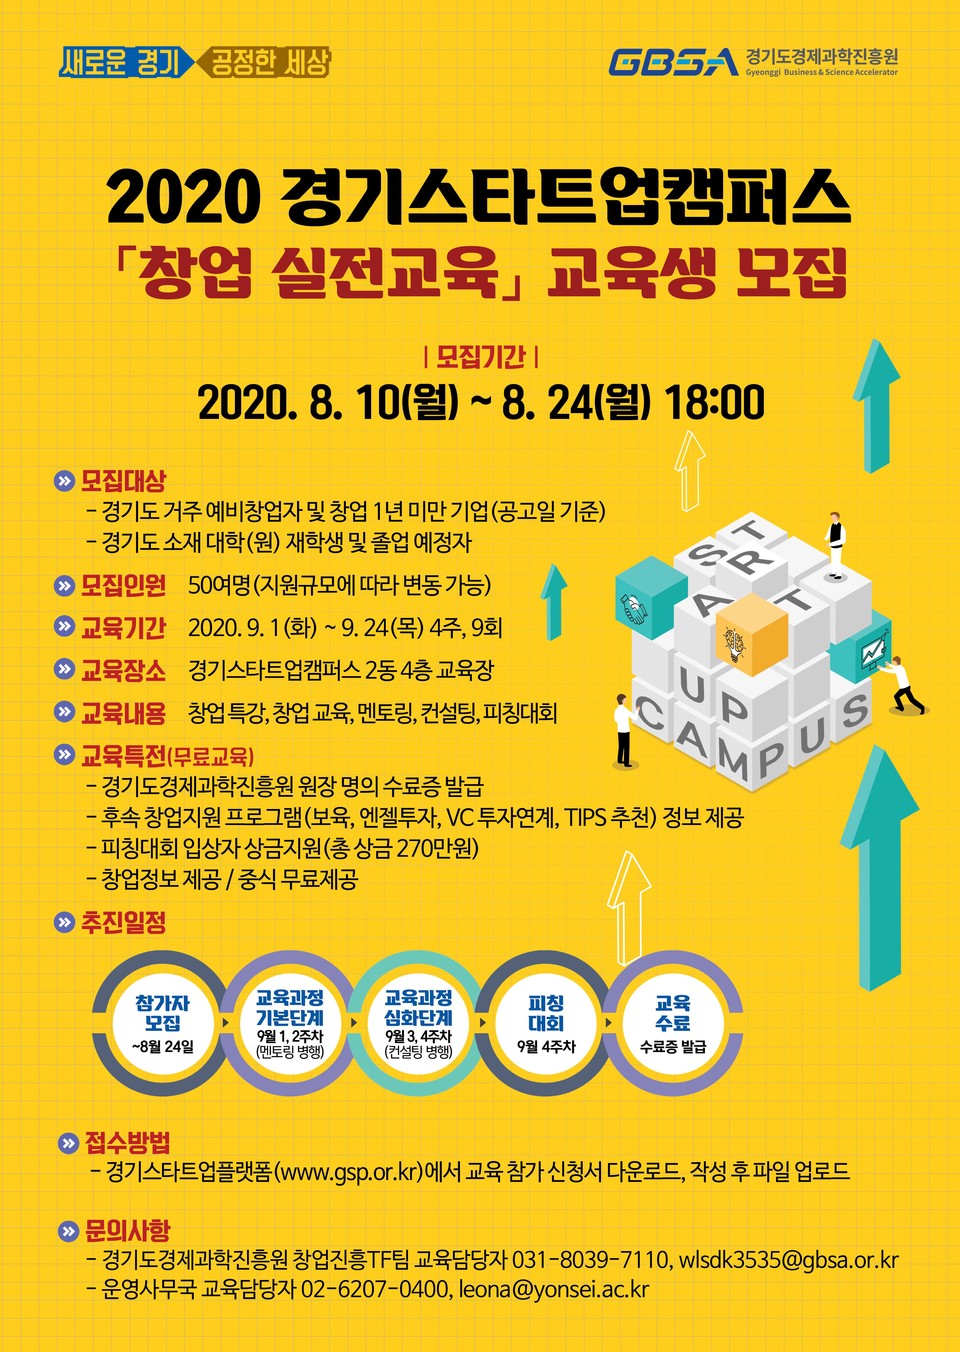  ‘2020경기스타트업캠퍼스 창업 실전교육’ 포스터. (출처: 경기도경제과학진흥원)